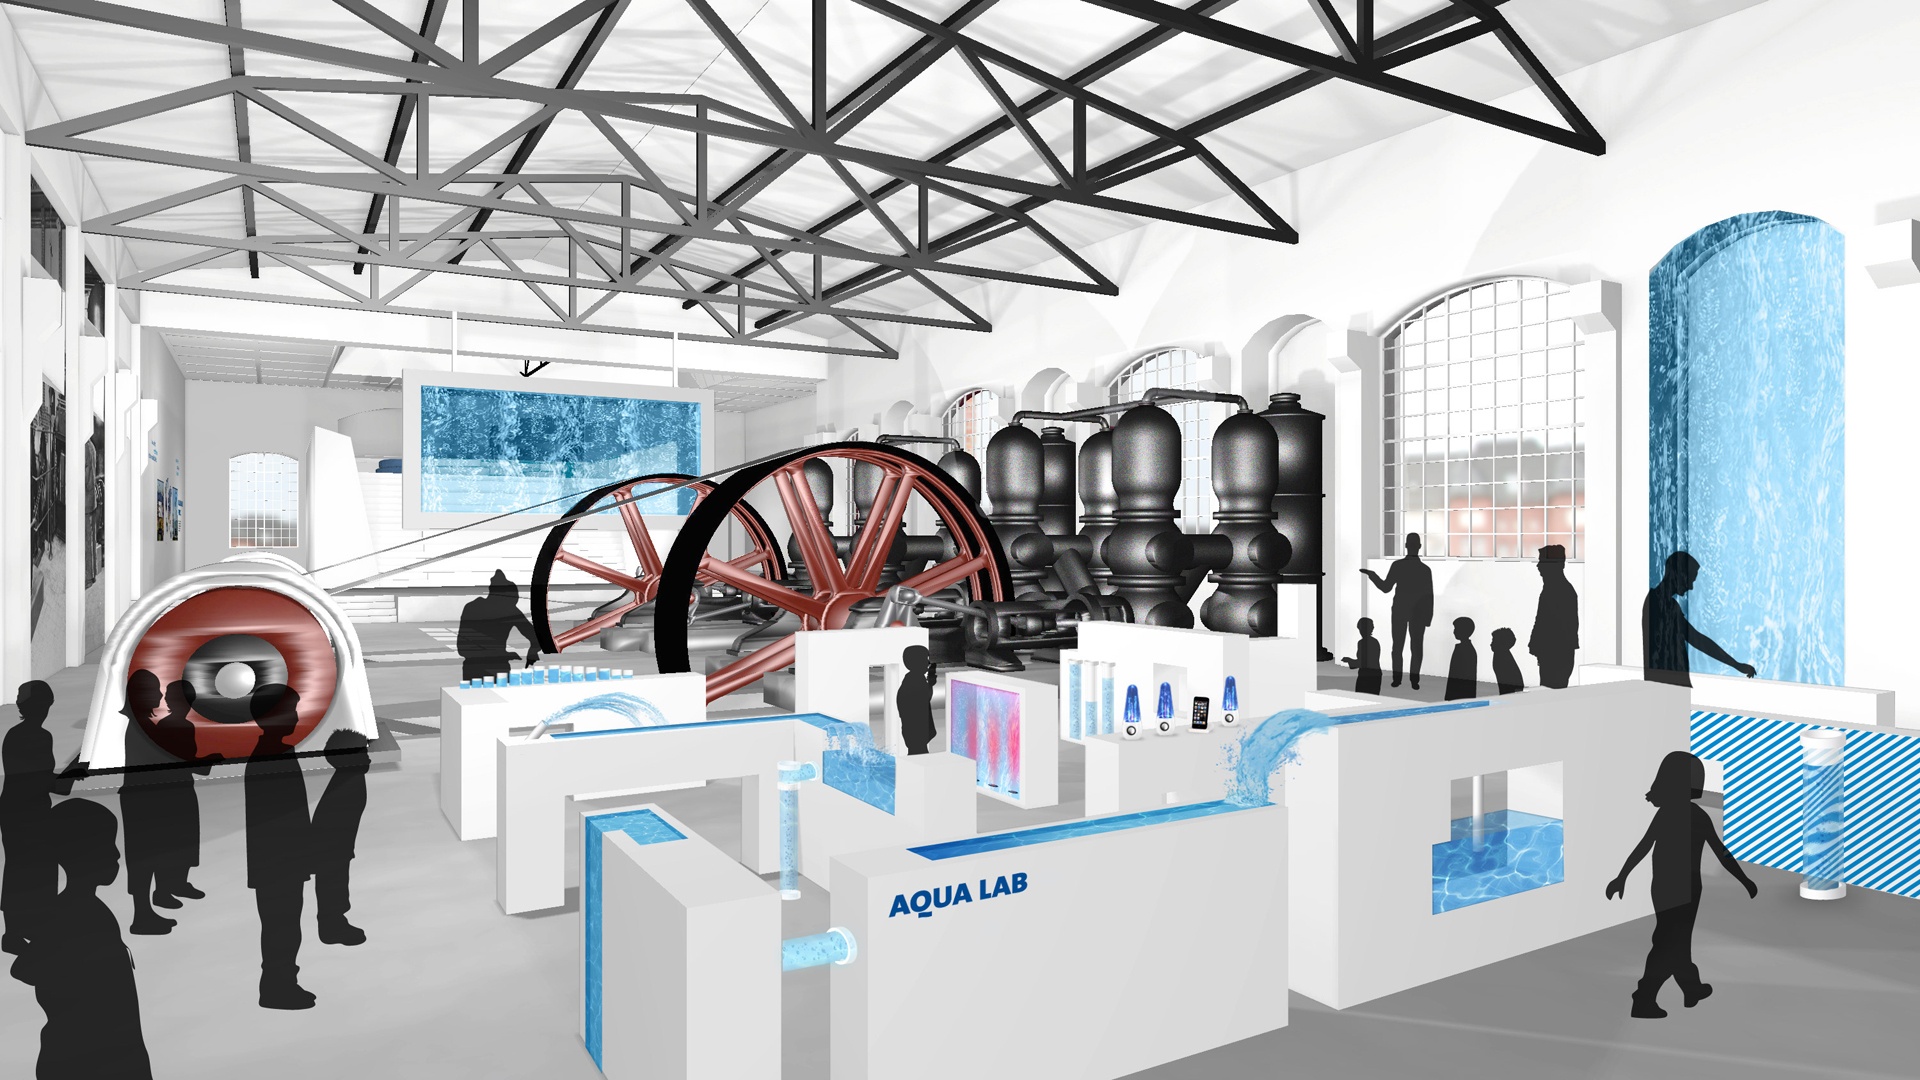 interaktive Ausstellung Wasserwelt Berliner Blau